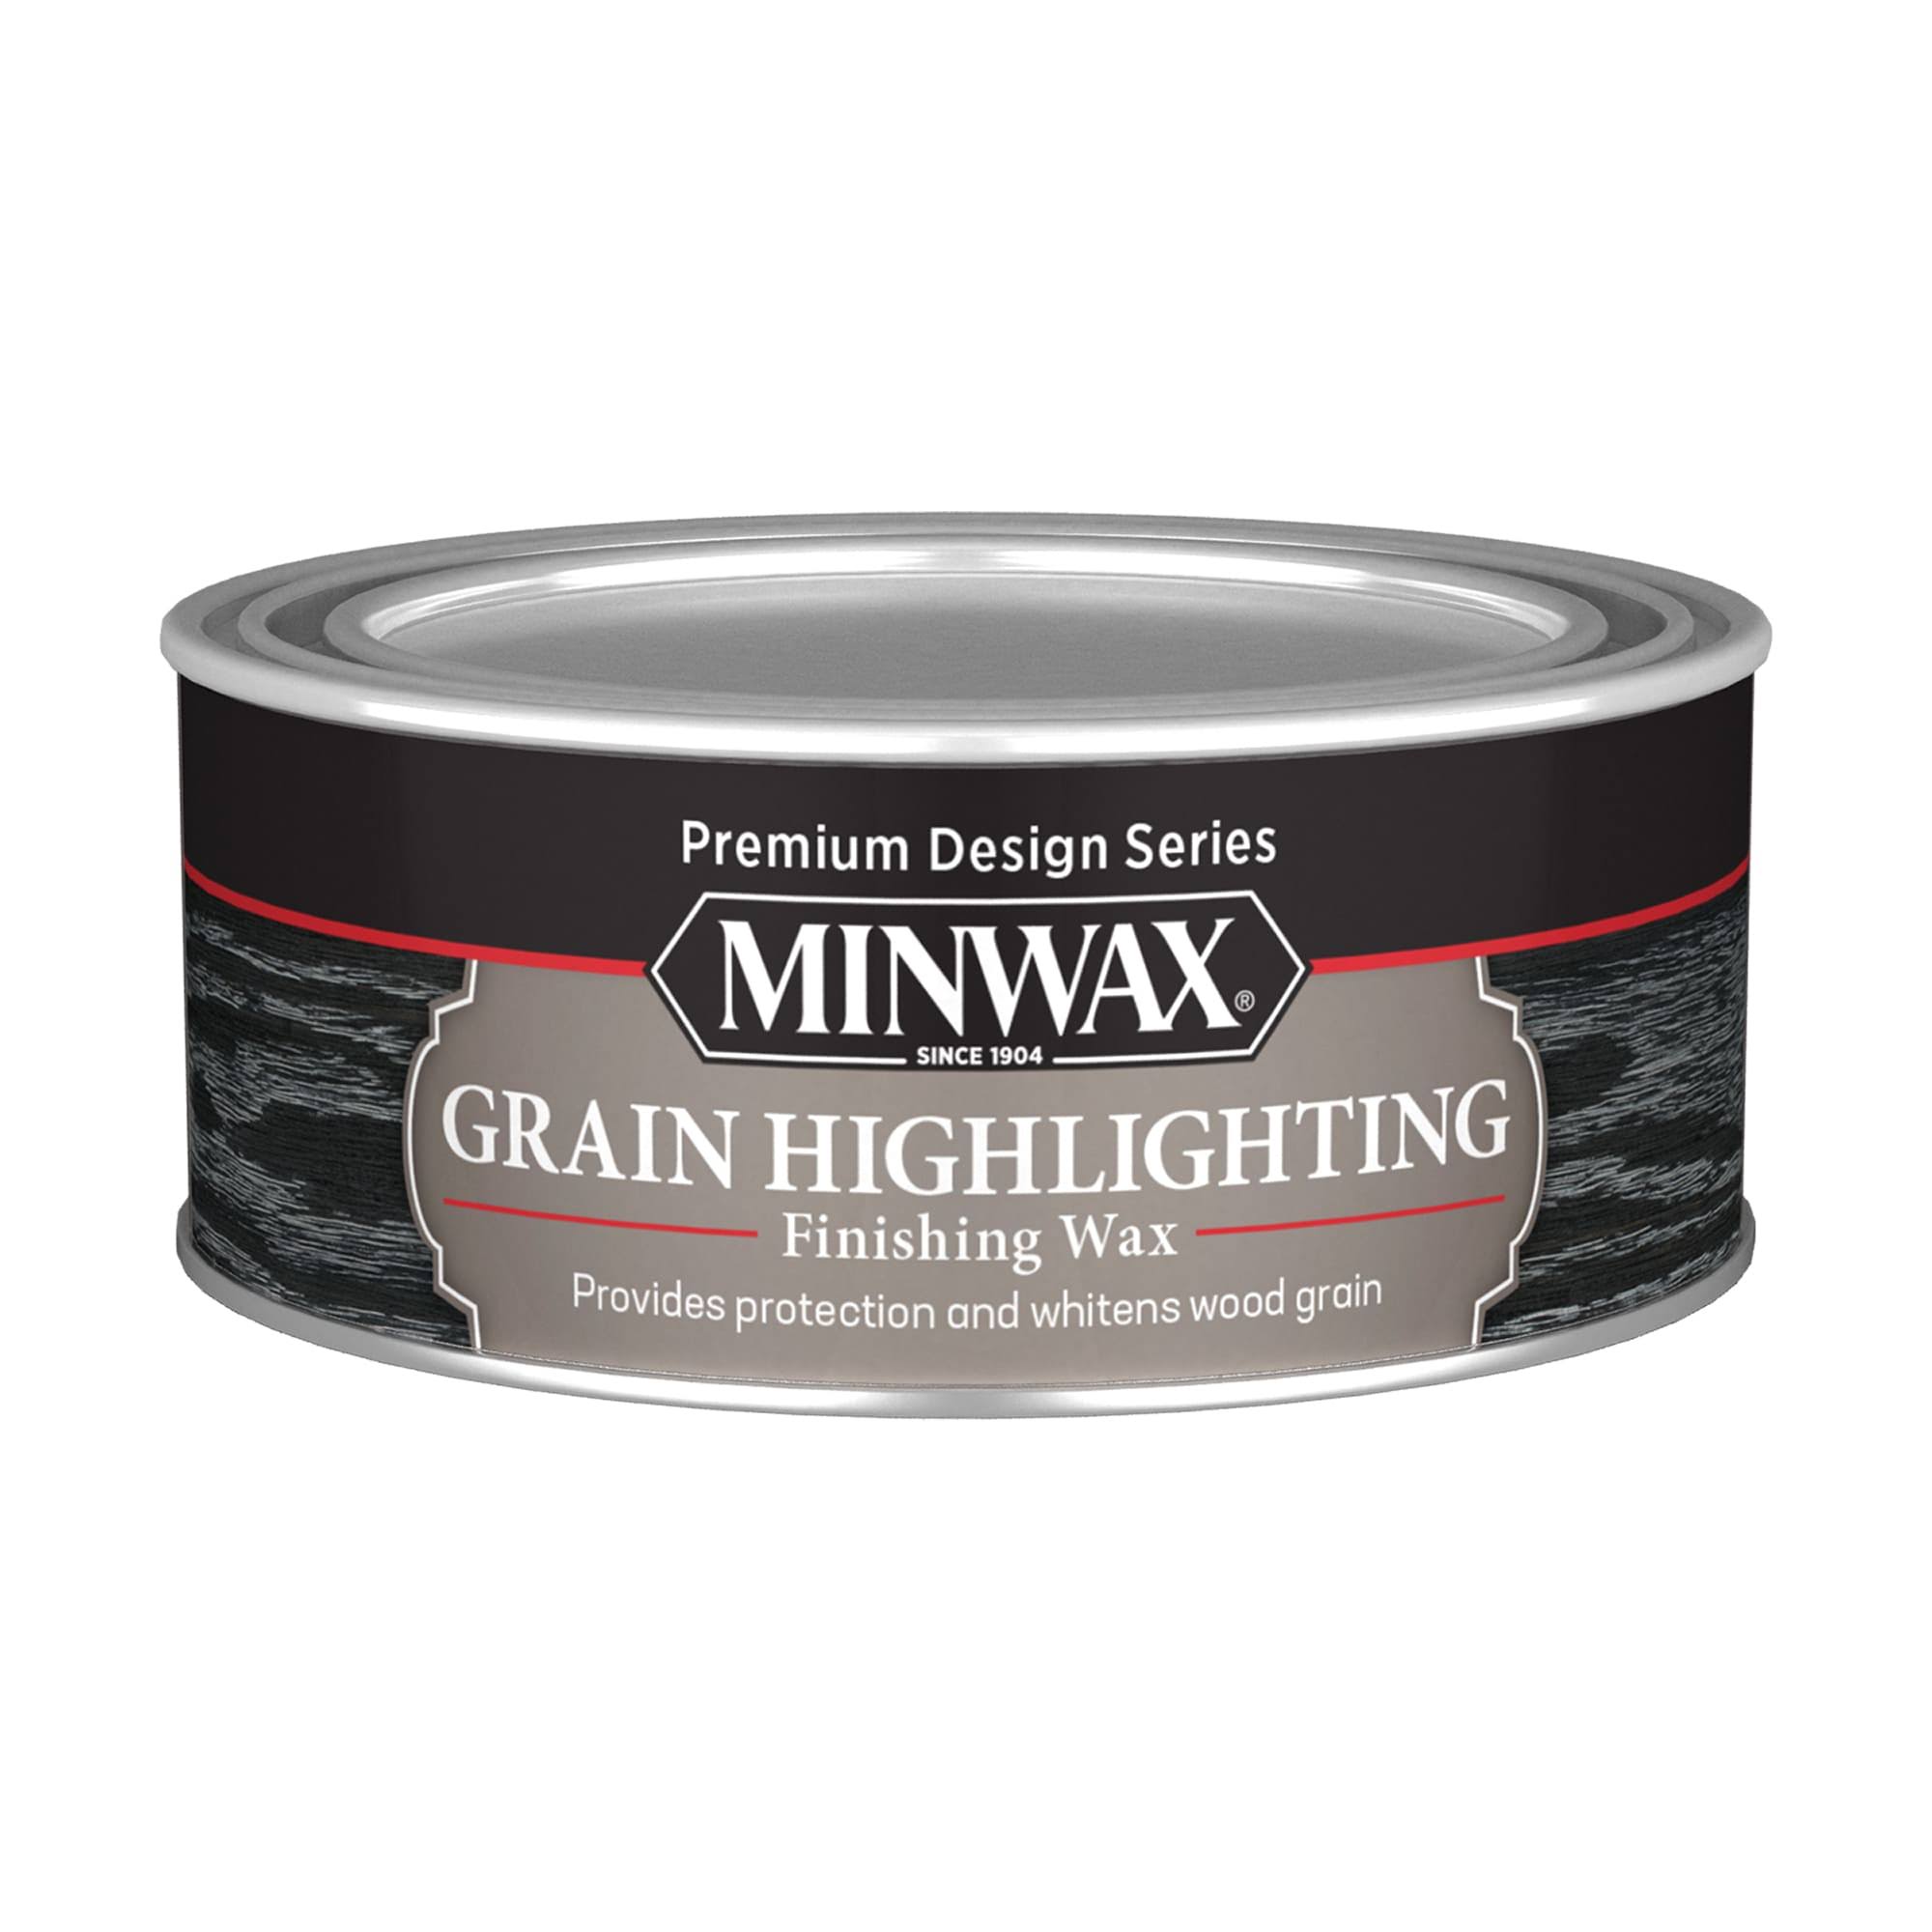 Minwax 8 oz. Grain Highlighting Finishing Wax